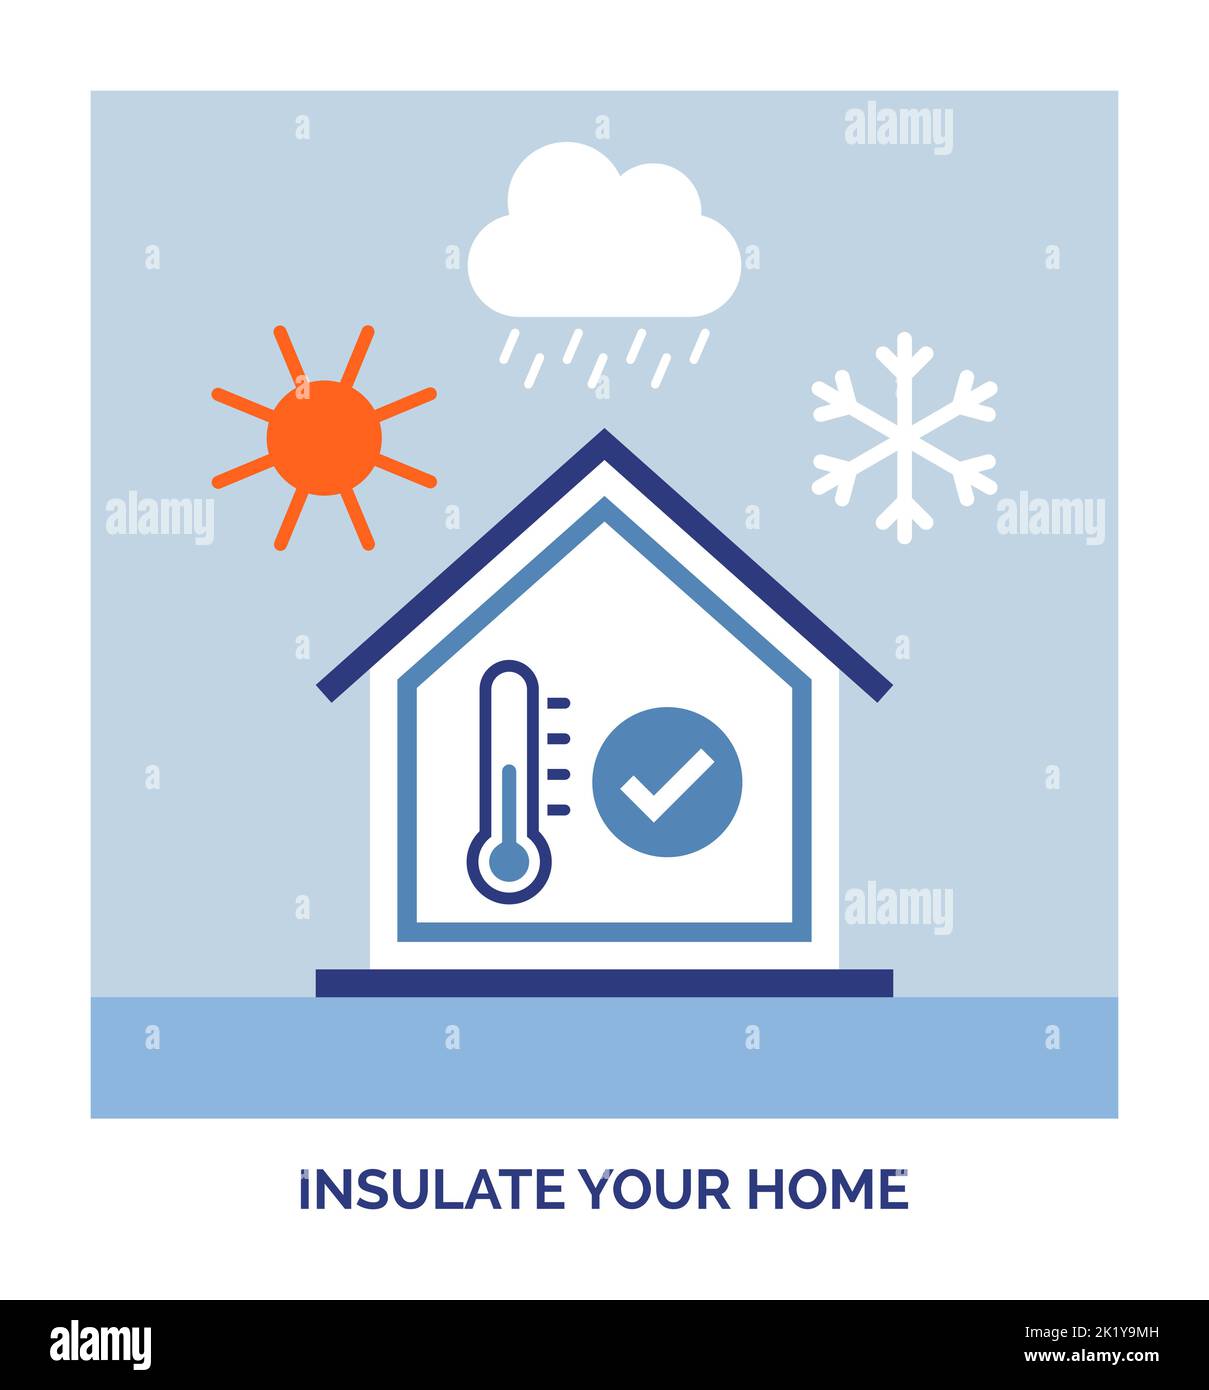 Maison à faible consommation d'énergie : isolez votre maison et empêchez la perte de chaleur Illustration de Vecteur